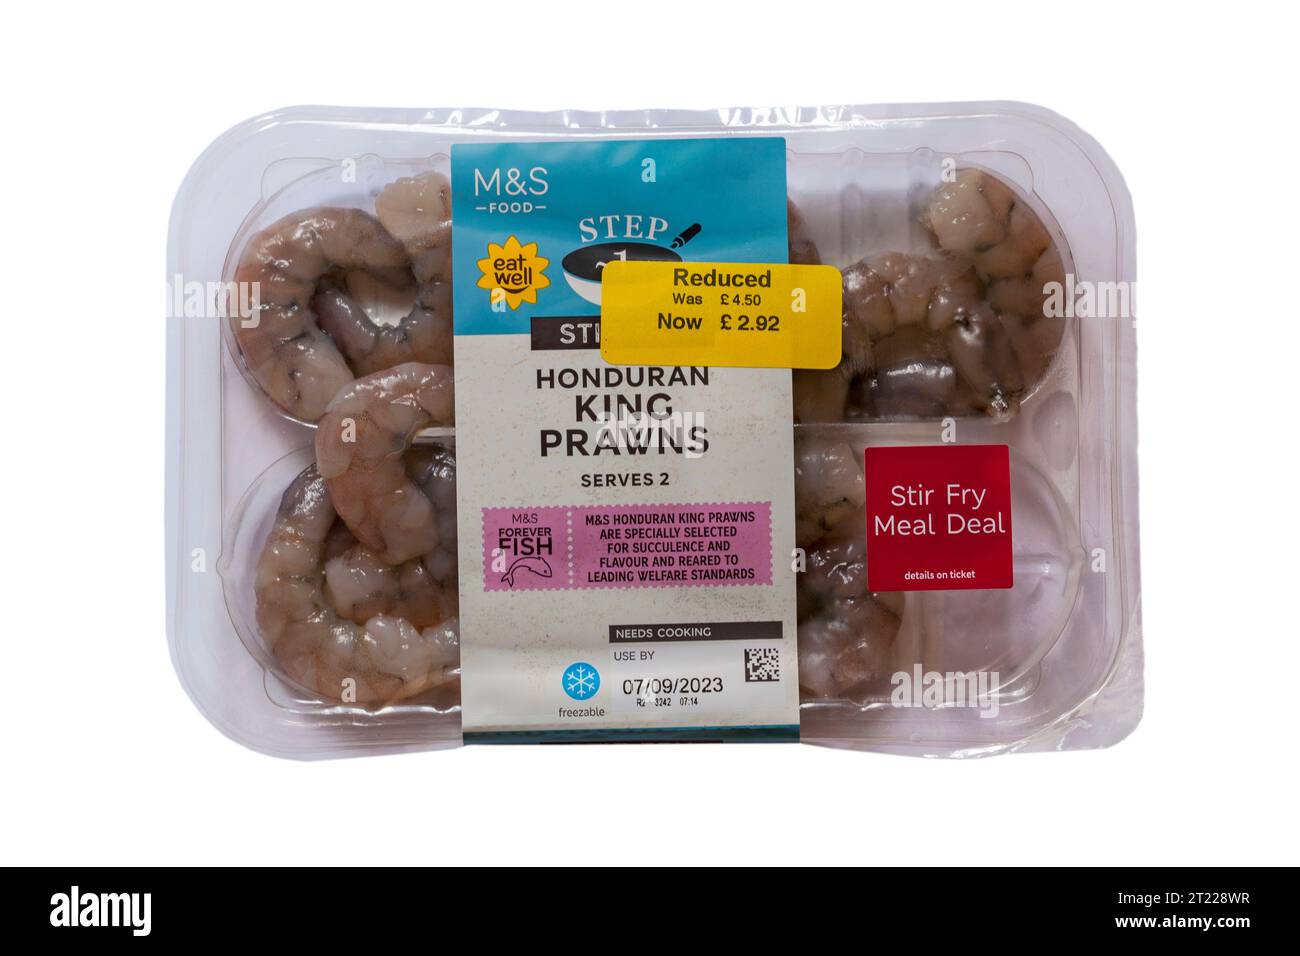 pack de crevettes royales honduriennes de M&S les crevettes royales honduriennes sont spécialement sélectionnées pour leur succulence et leur saveur et élevées selon les normes de bien-être les plus élevées Banque D'Images